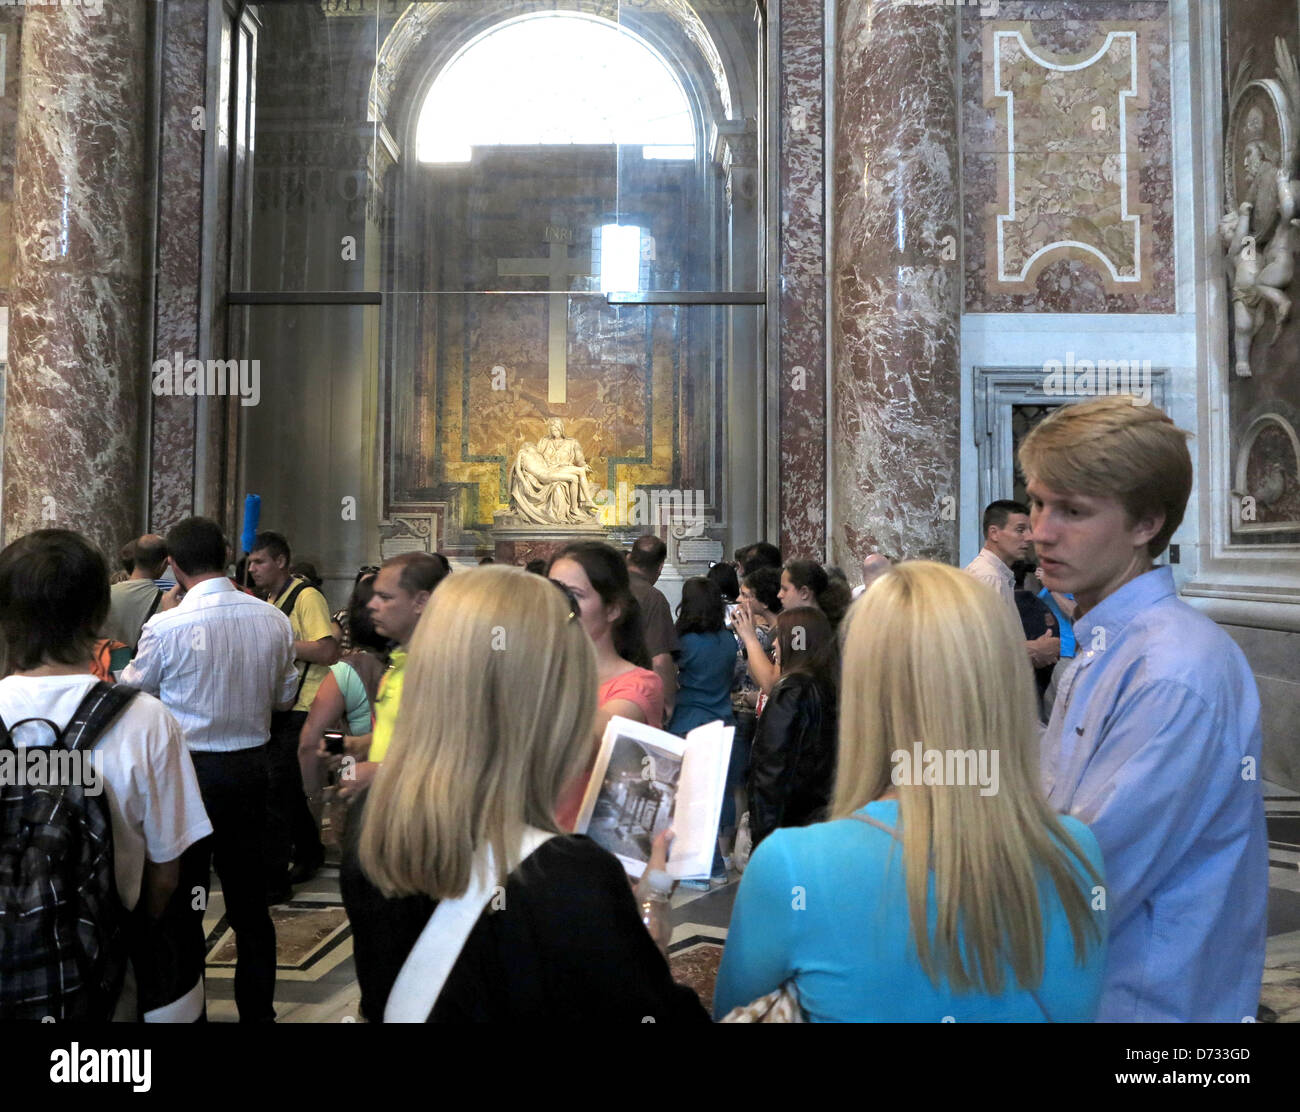 Vaticano: un grupo de visitantes en frente de la Pietà de Miguel Ángel en la Basílica de San Pedro en Roma Foto de stock